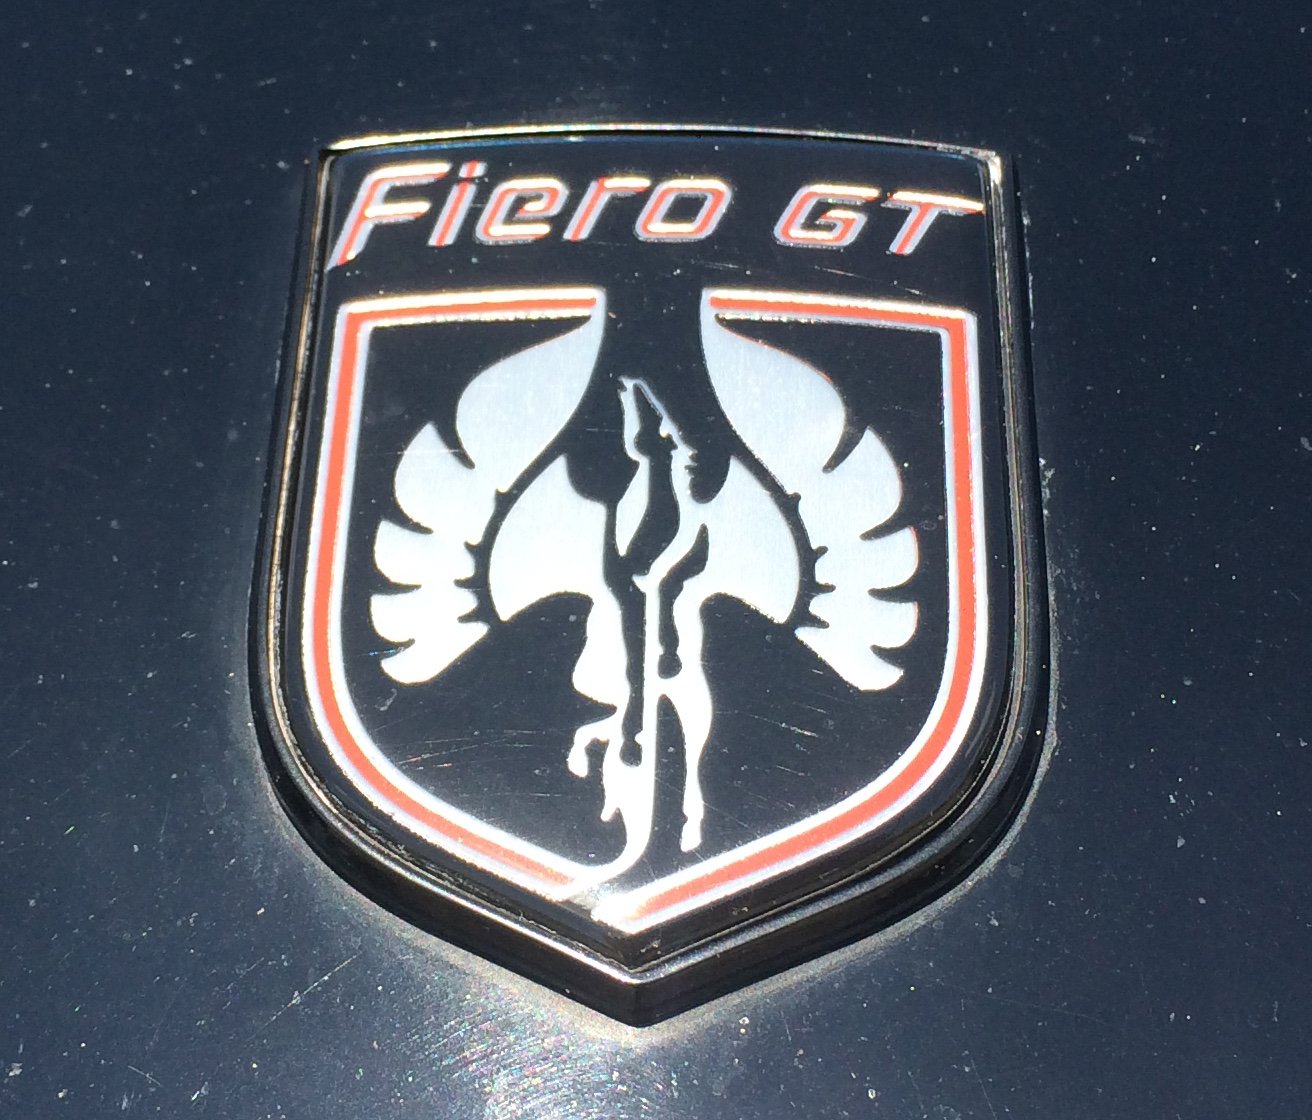 Lot Shots Find of the Week: 1985 Pontiac Fiero GT - OnAllCylinders